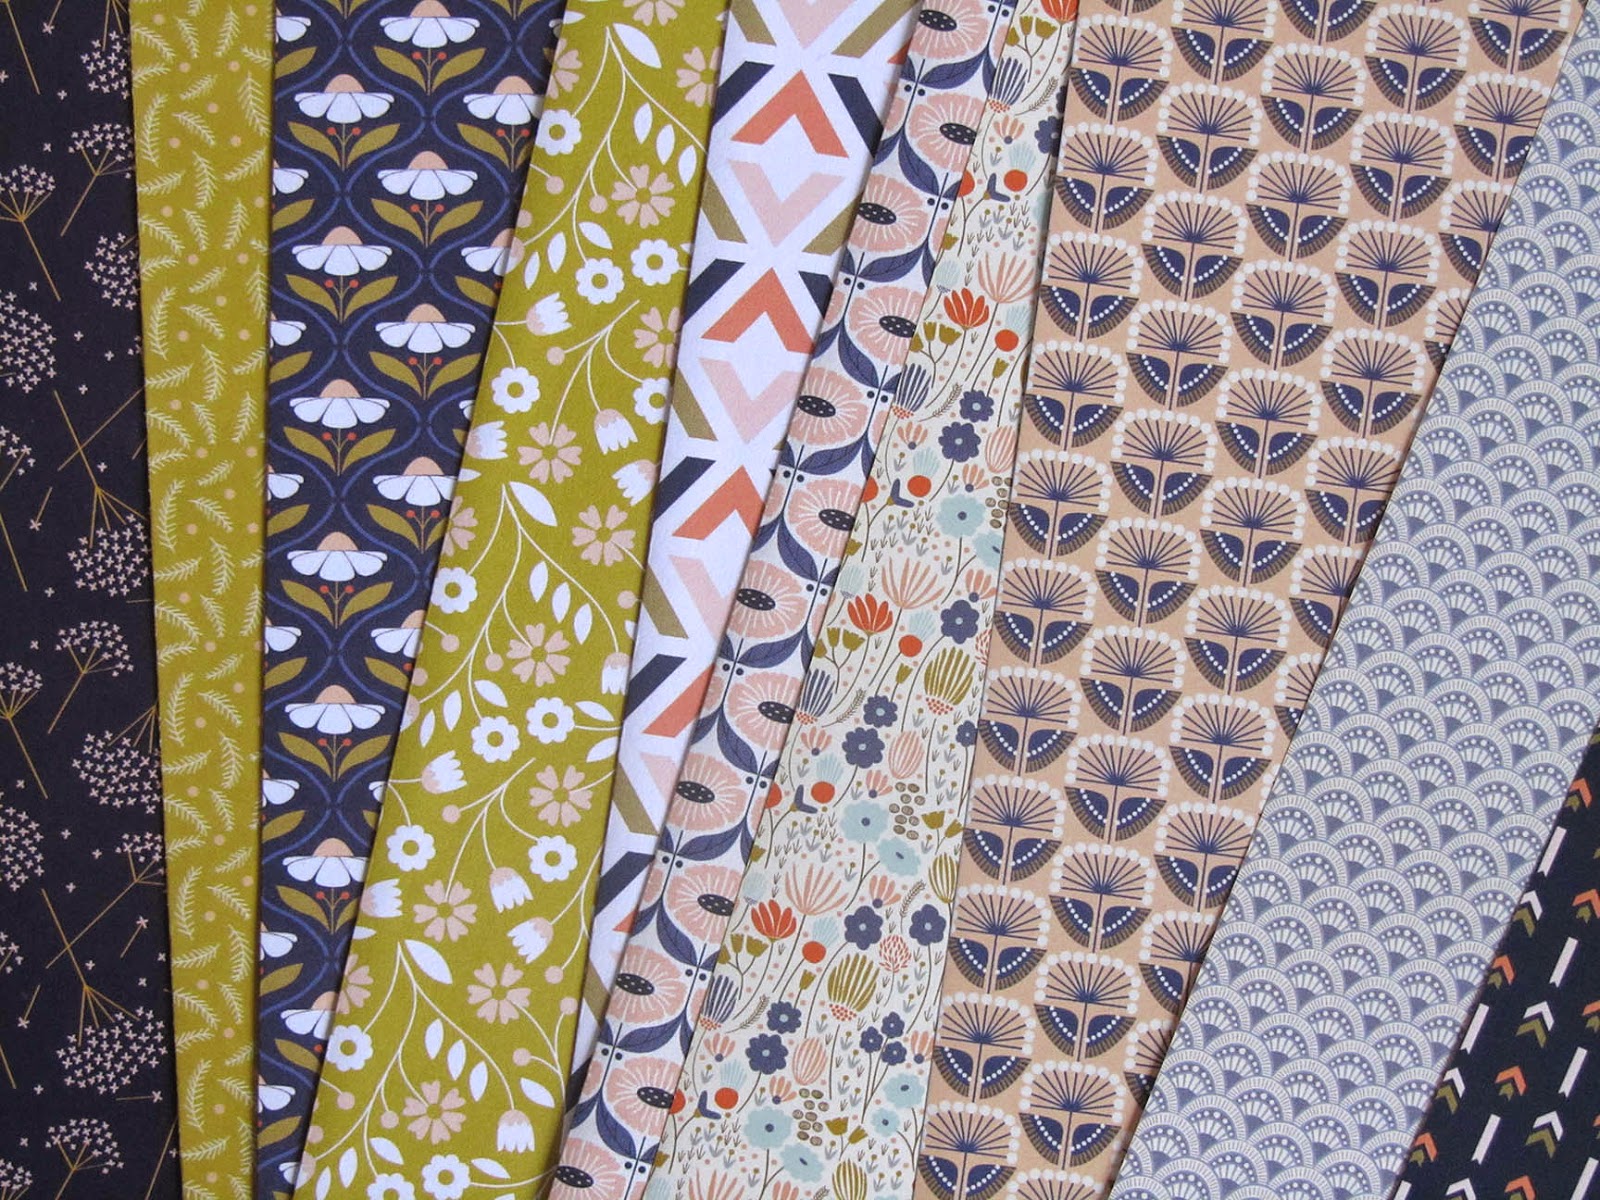 patterned paper designed by Elizabeth Olwen